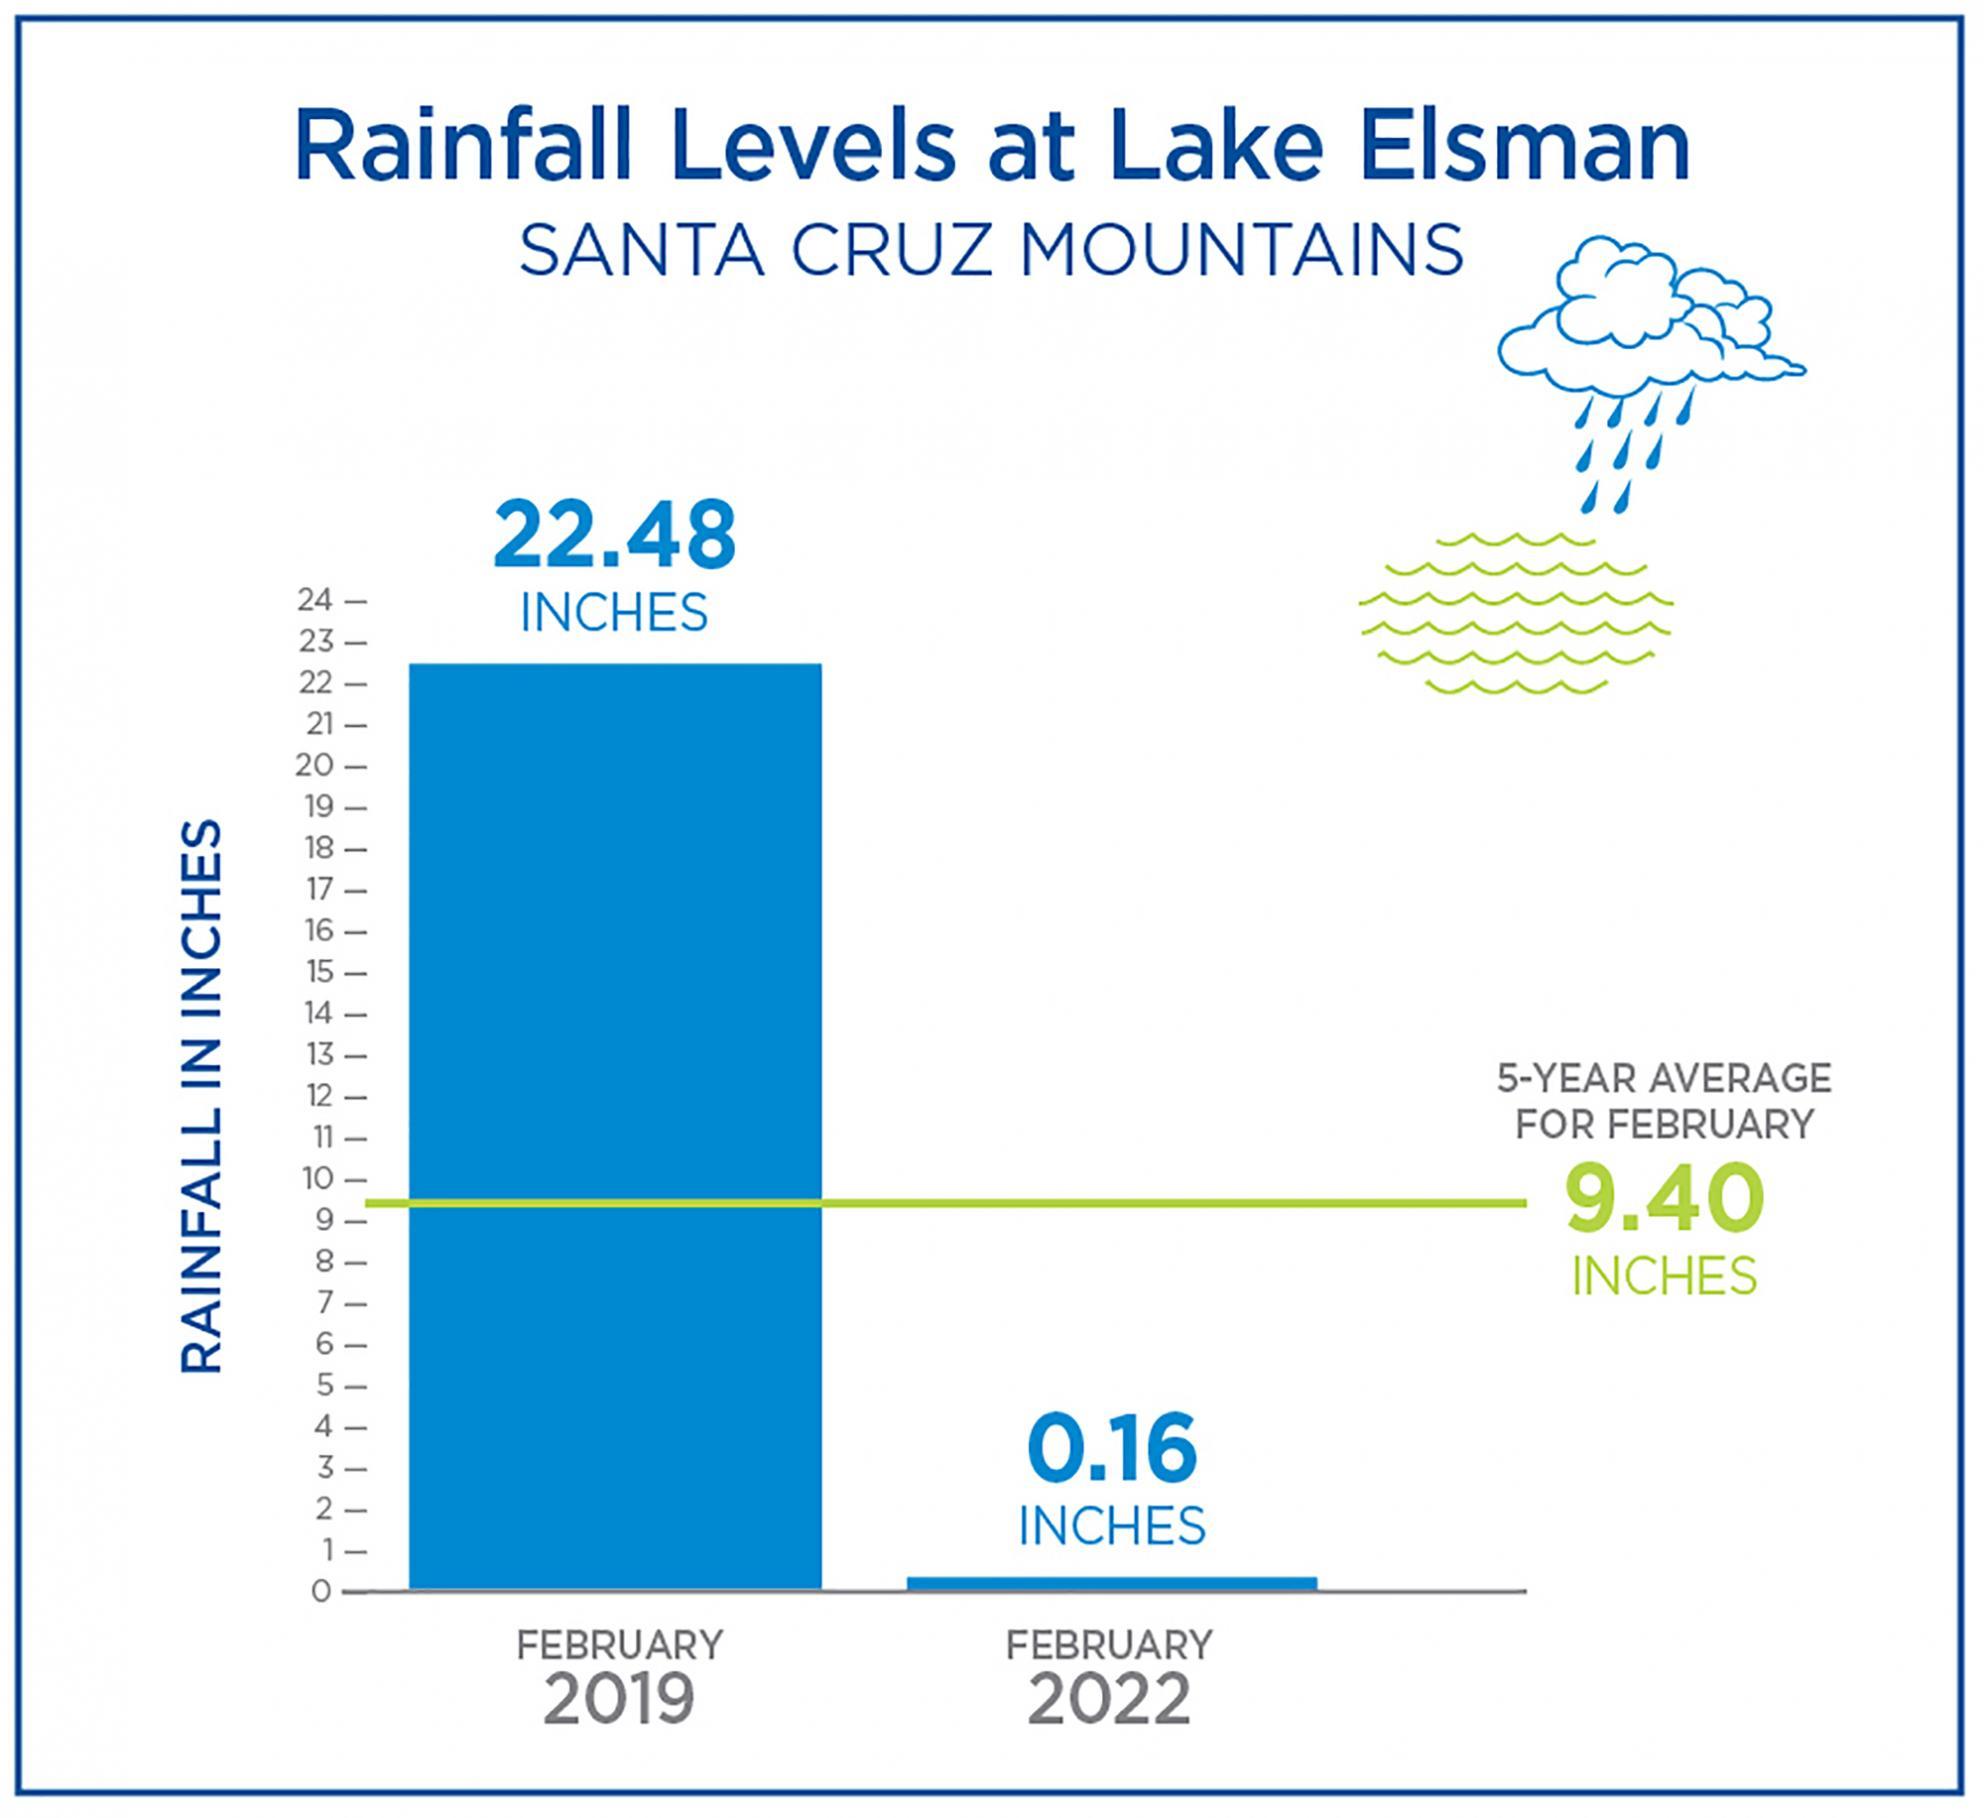 Rainfall levels at lake Elsman